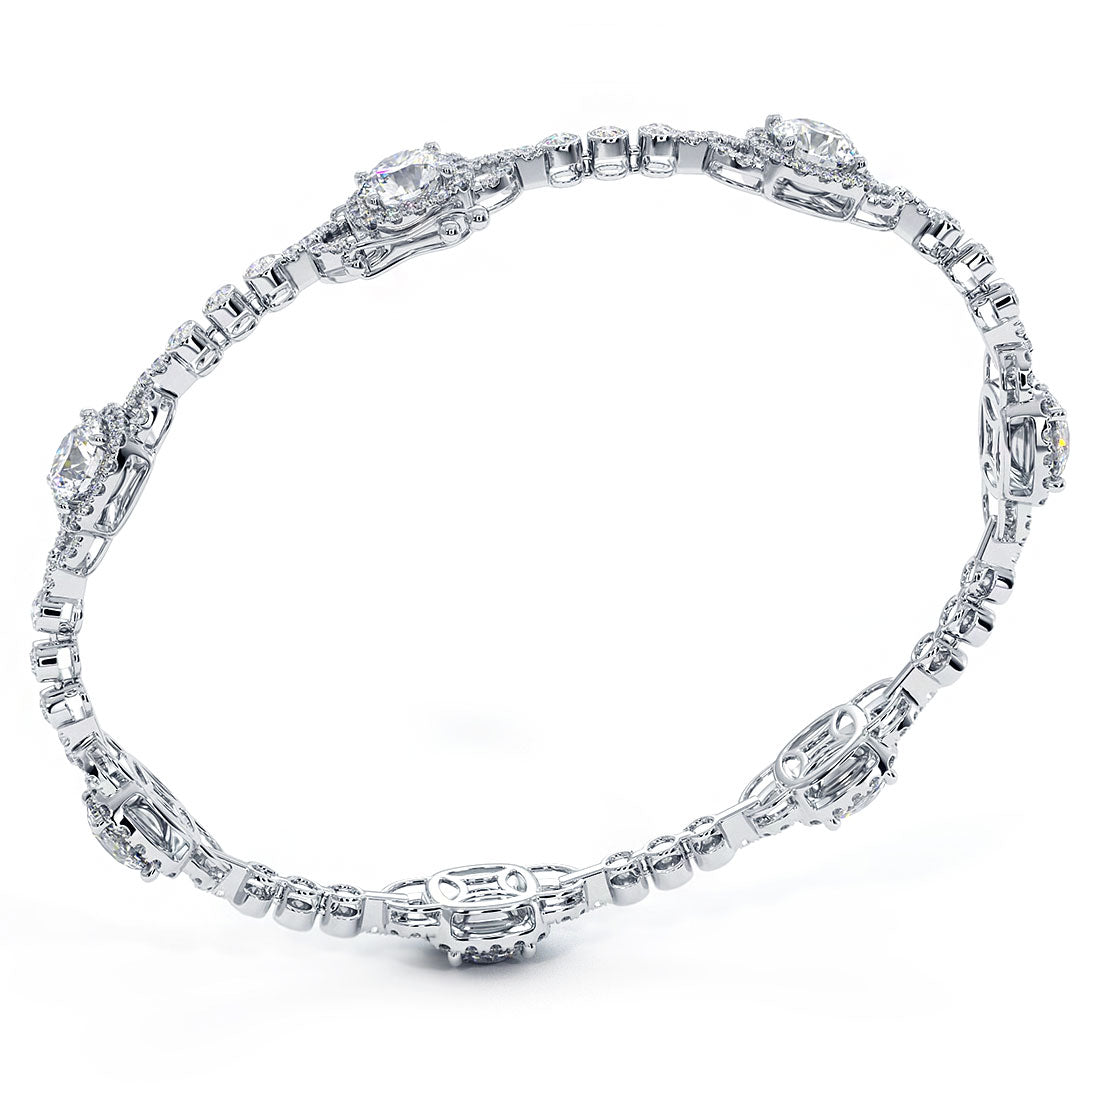 6.60 Carat Pave Halo Diamond Bracelet set in 18k White Gold